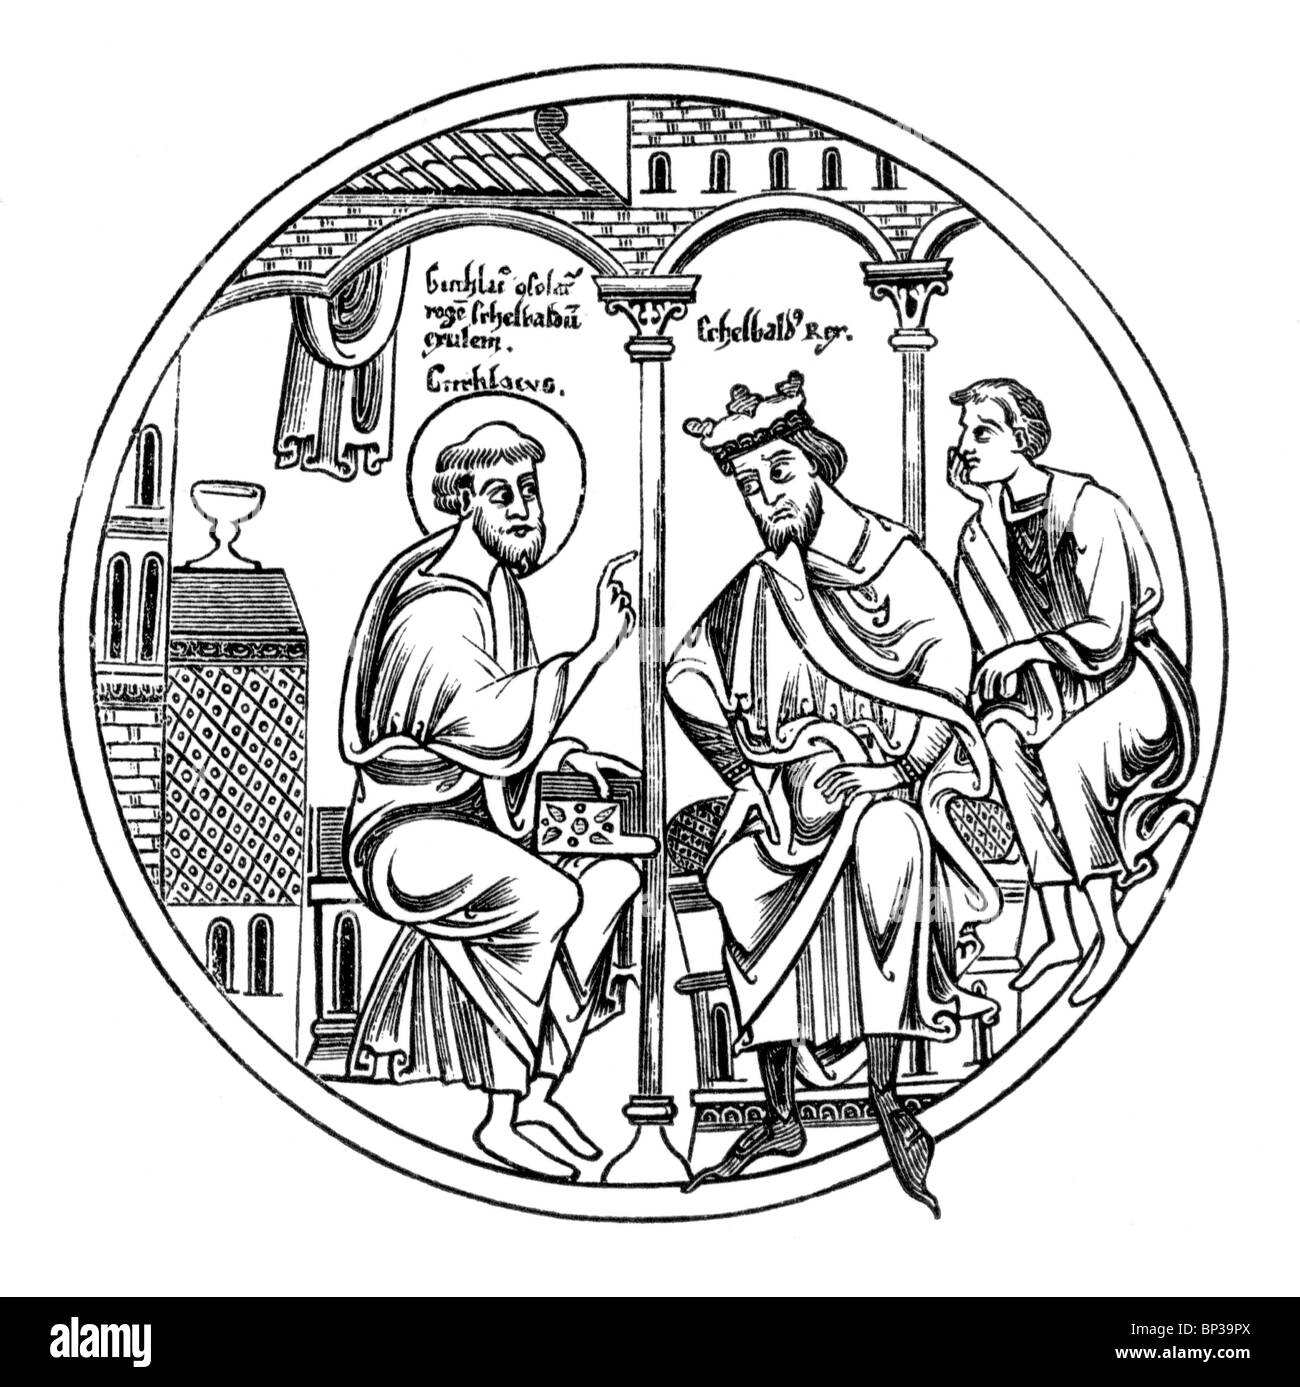 Illustration noir et blanc de la scène ; Guthlac Roll ; 12e siècle ; la vie de Guthlac ; Roi Æthelbald visiter Guthlac Banque D'Images